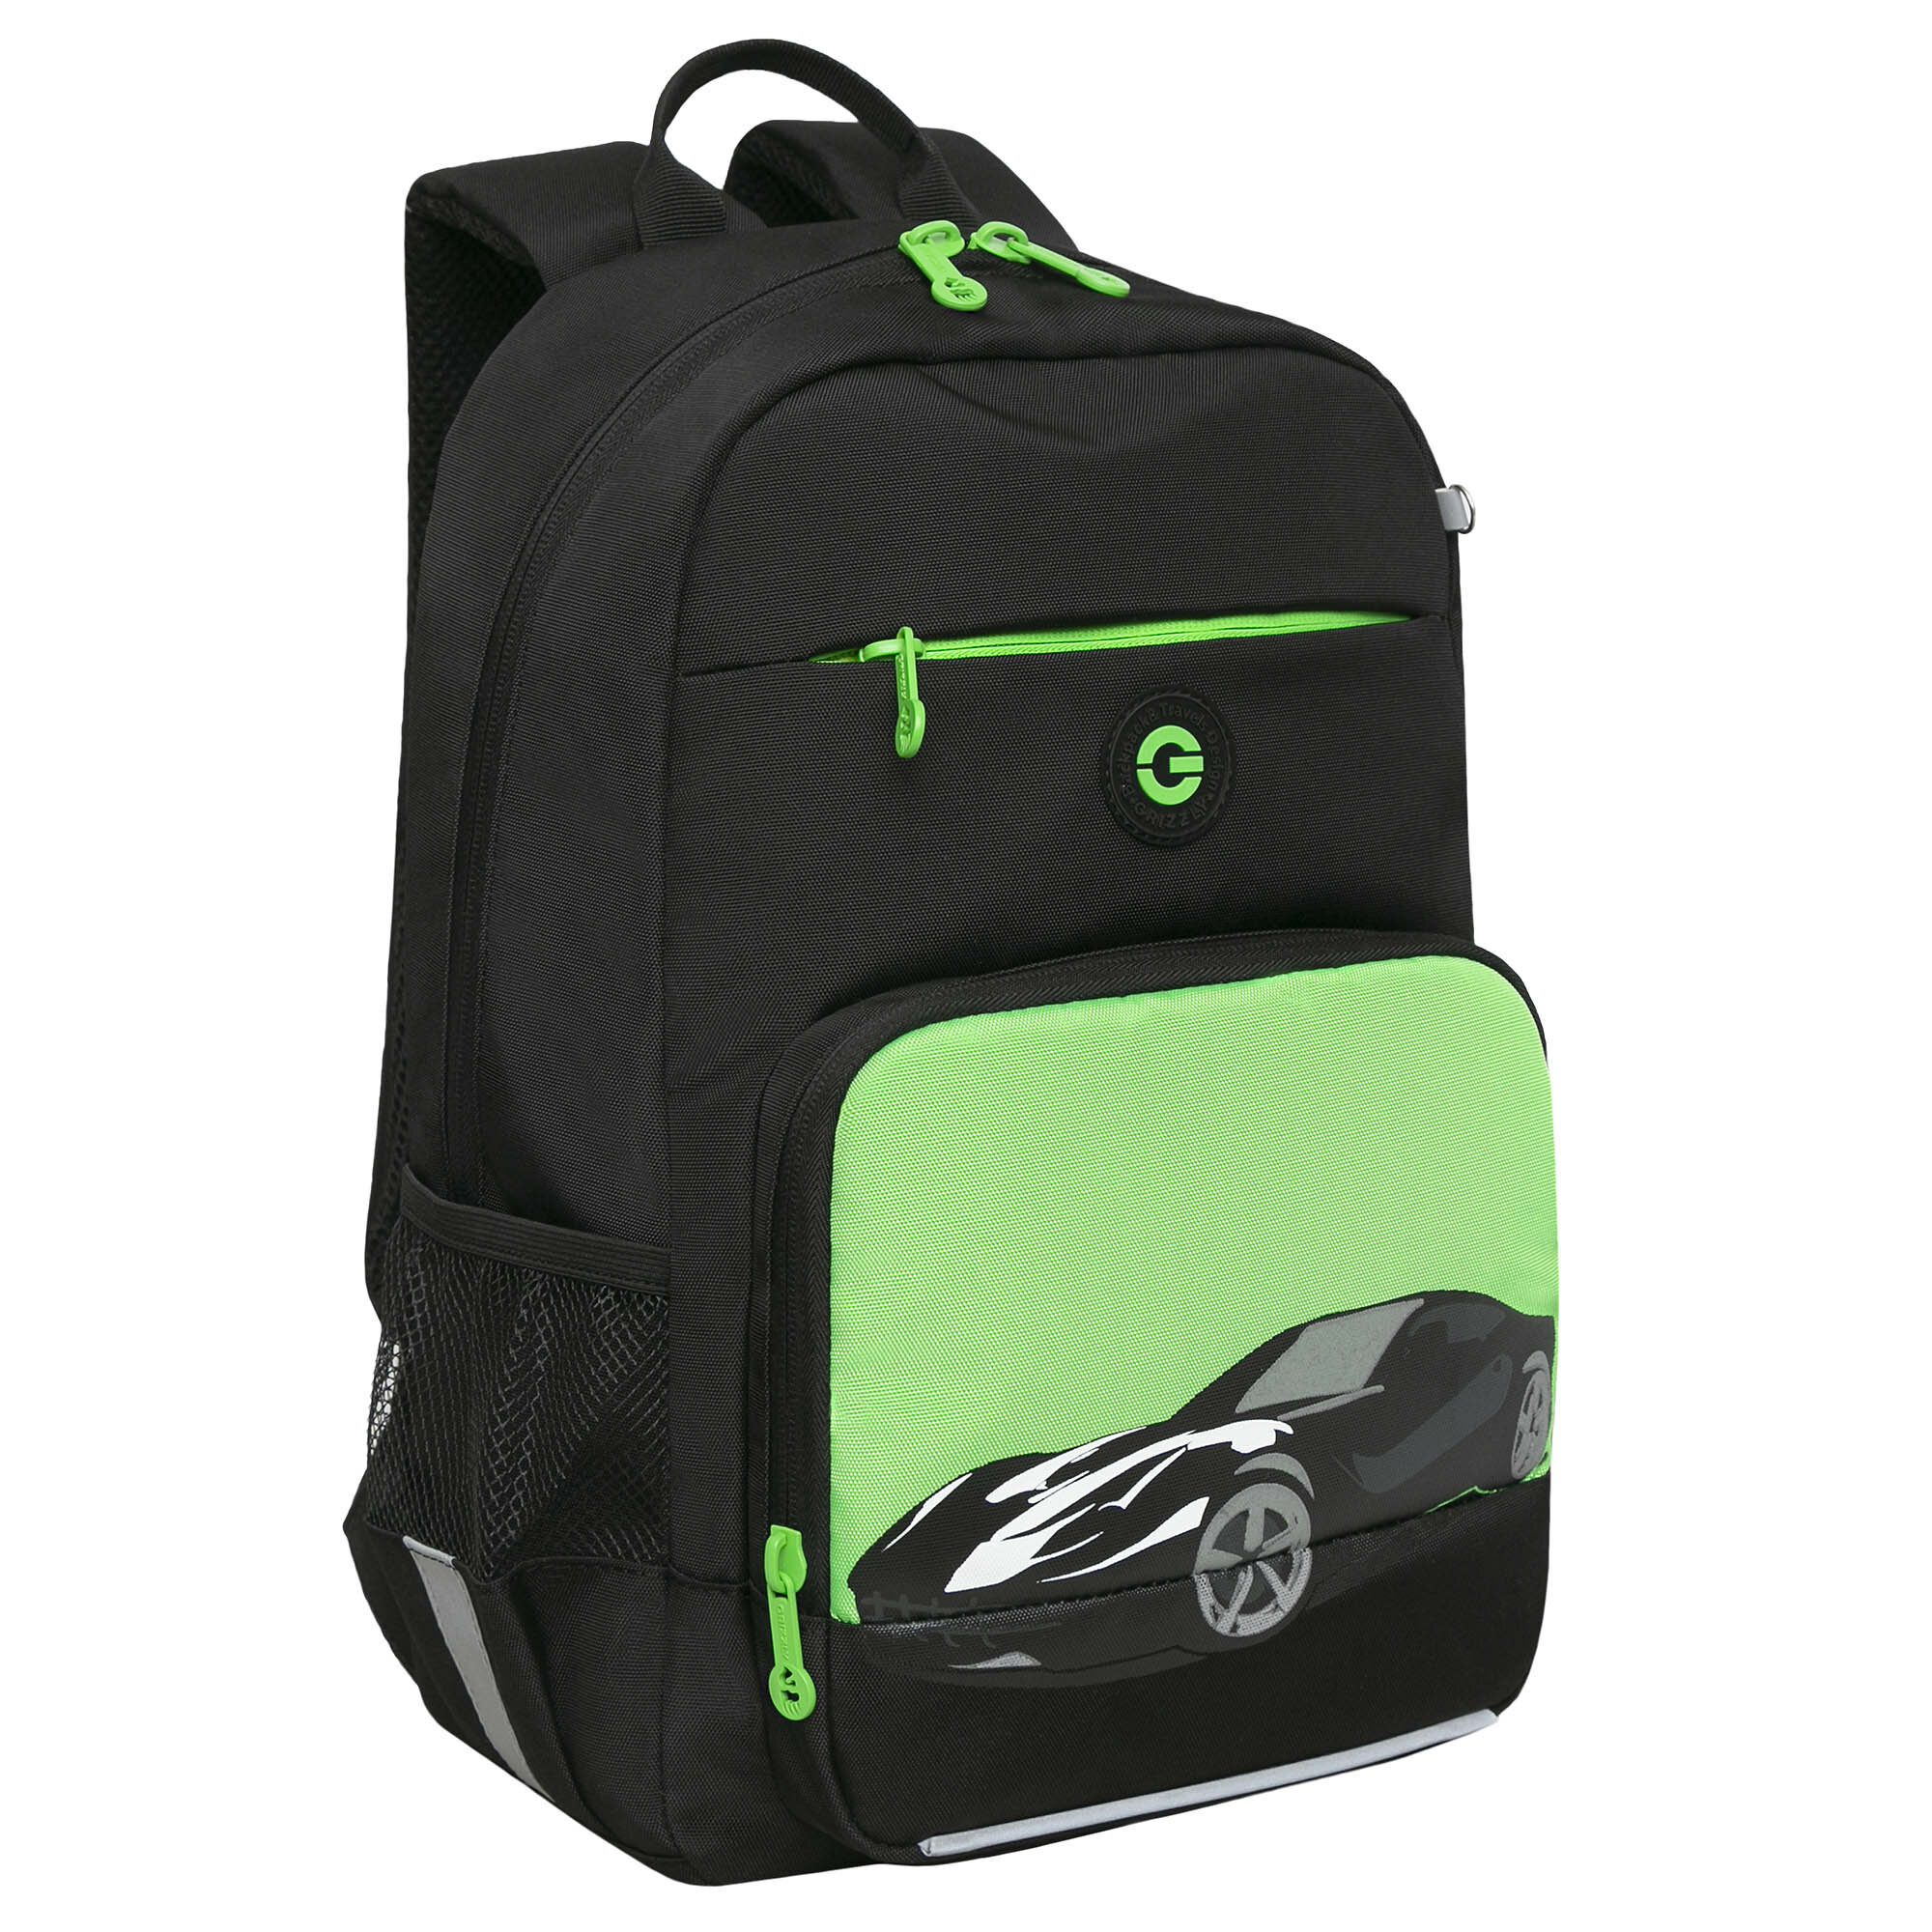 Рюкзак школьный с карманом для ноутбука 13", анатомической спинкой, для мальчика RB-355-1/4